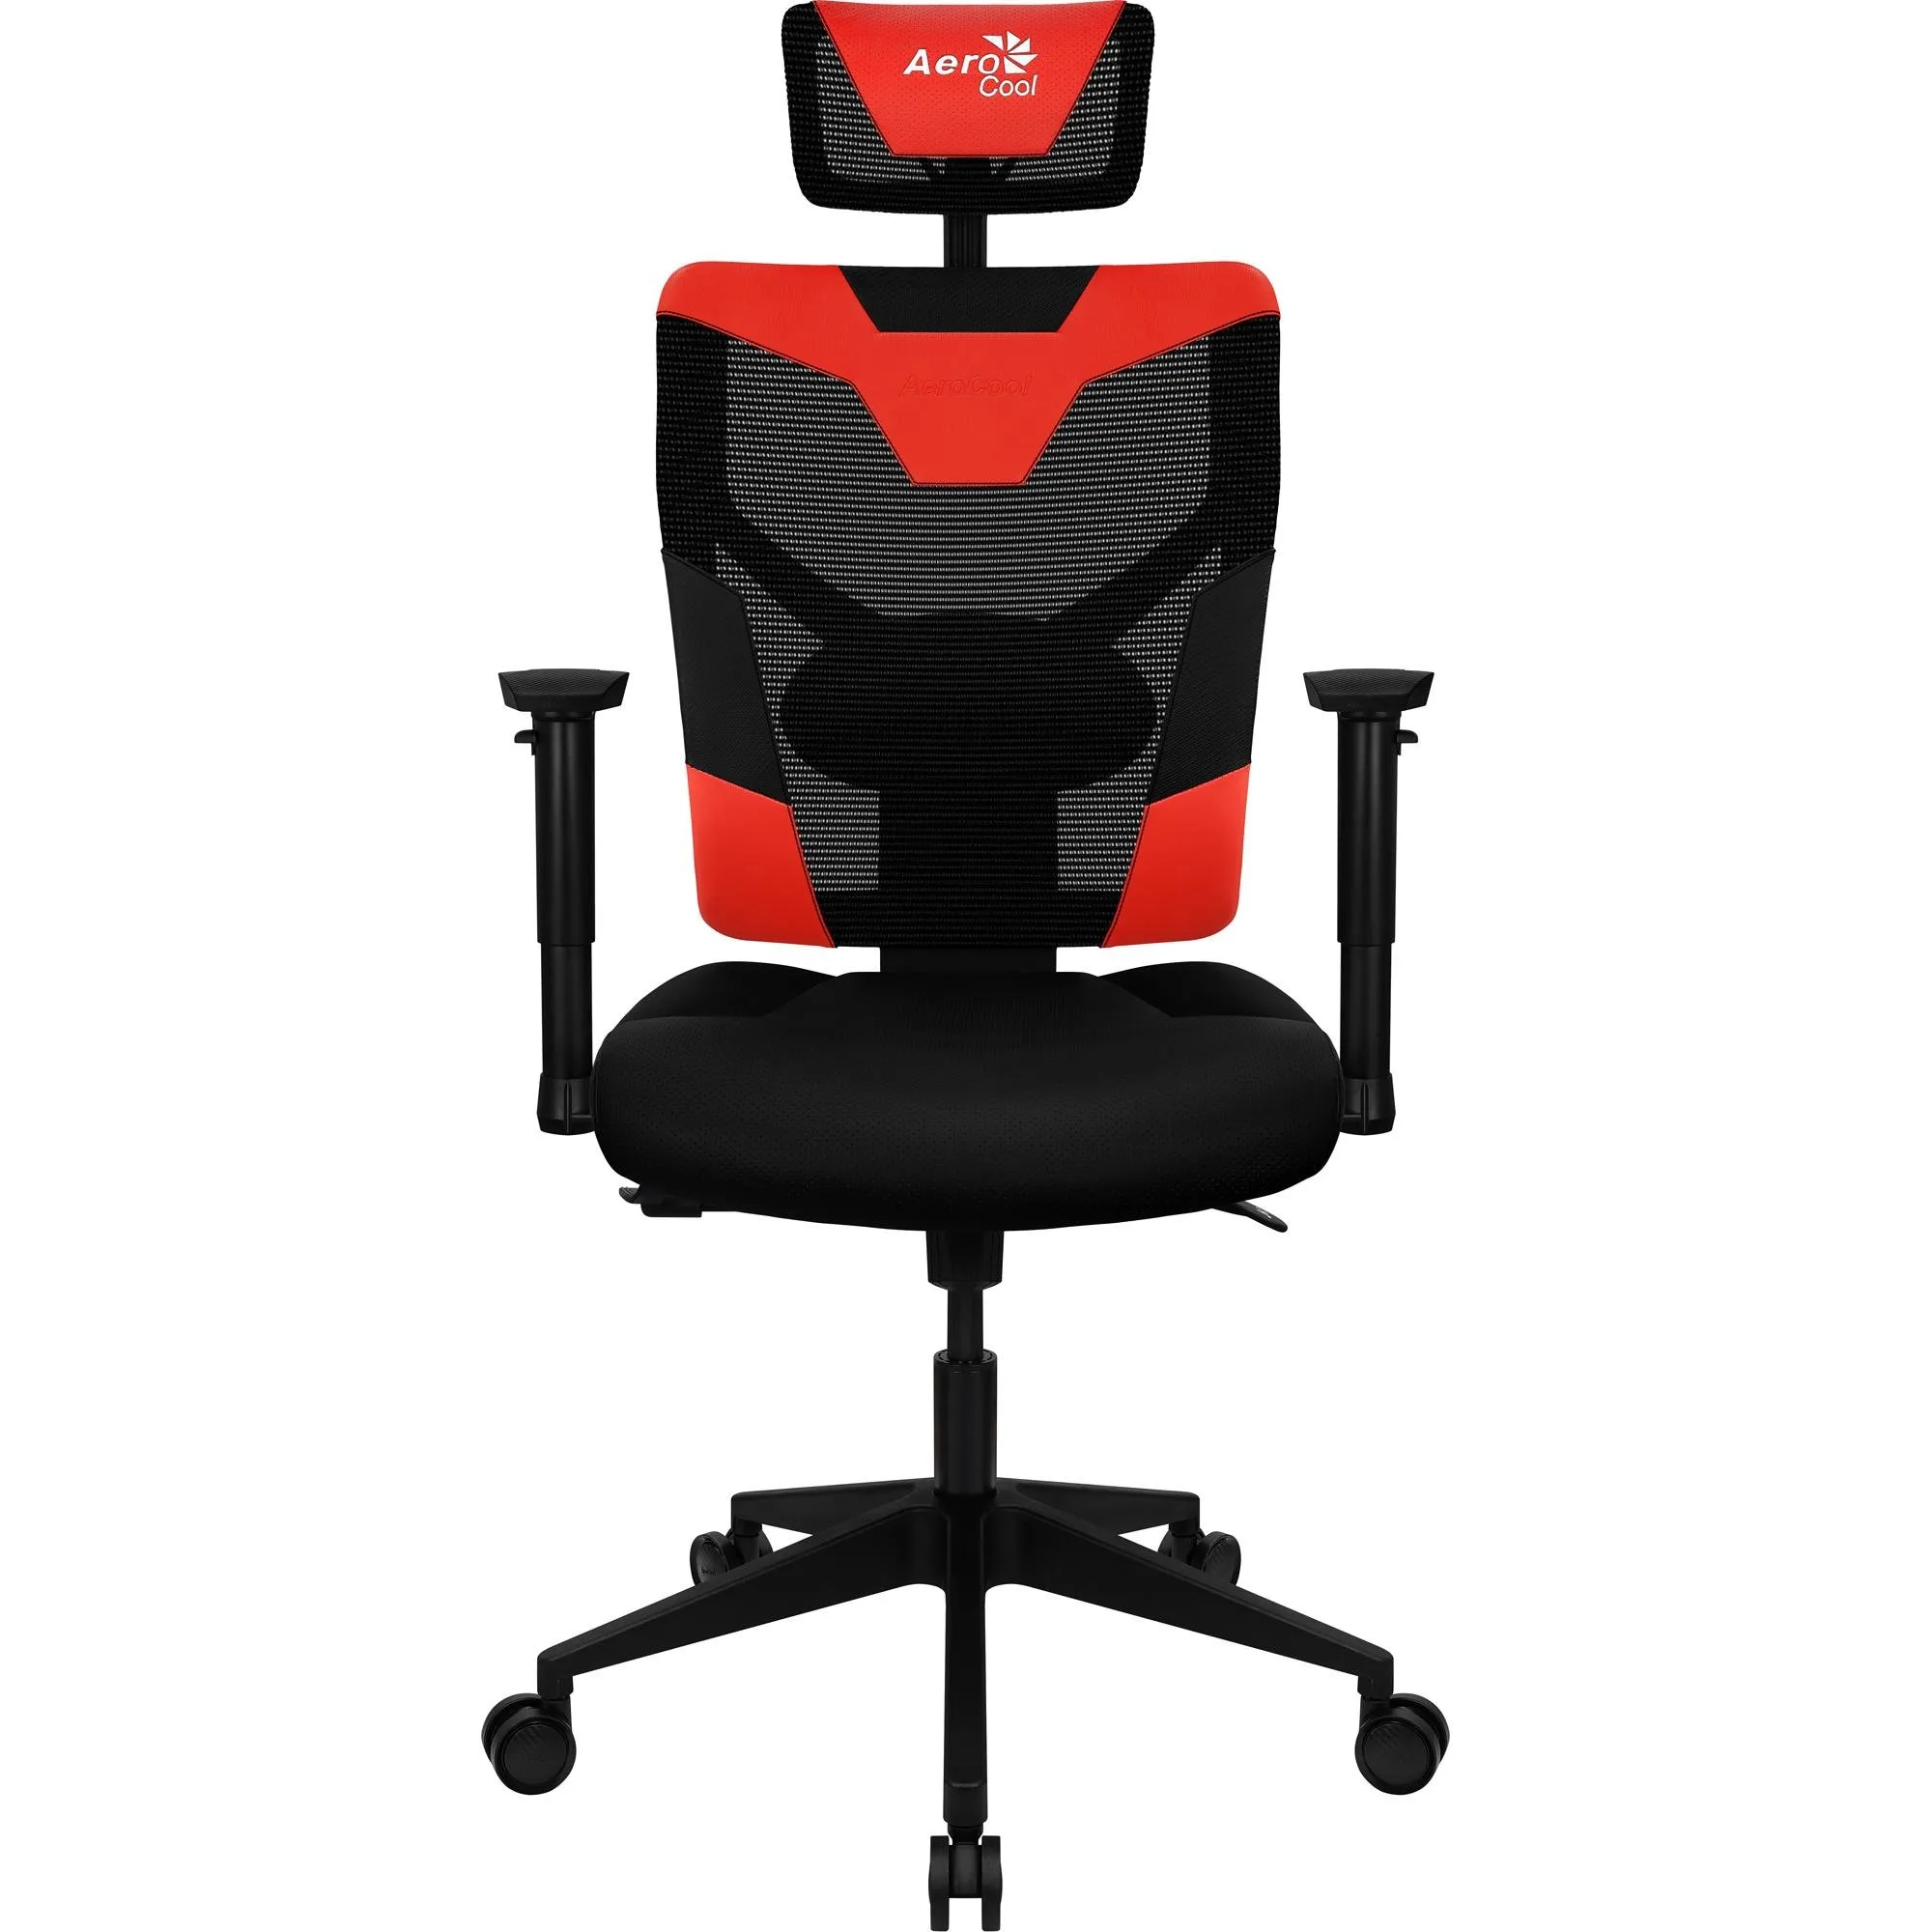 Cadeira Ergonômica Aerocool Guardian Champion Red Vermelha por 1.359,90 à vista no boleto/pix ou parcele em até 12x sem juros. Compre na loja Aerocool!